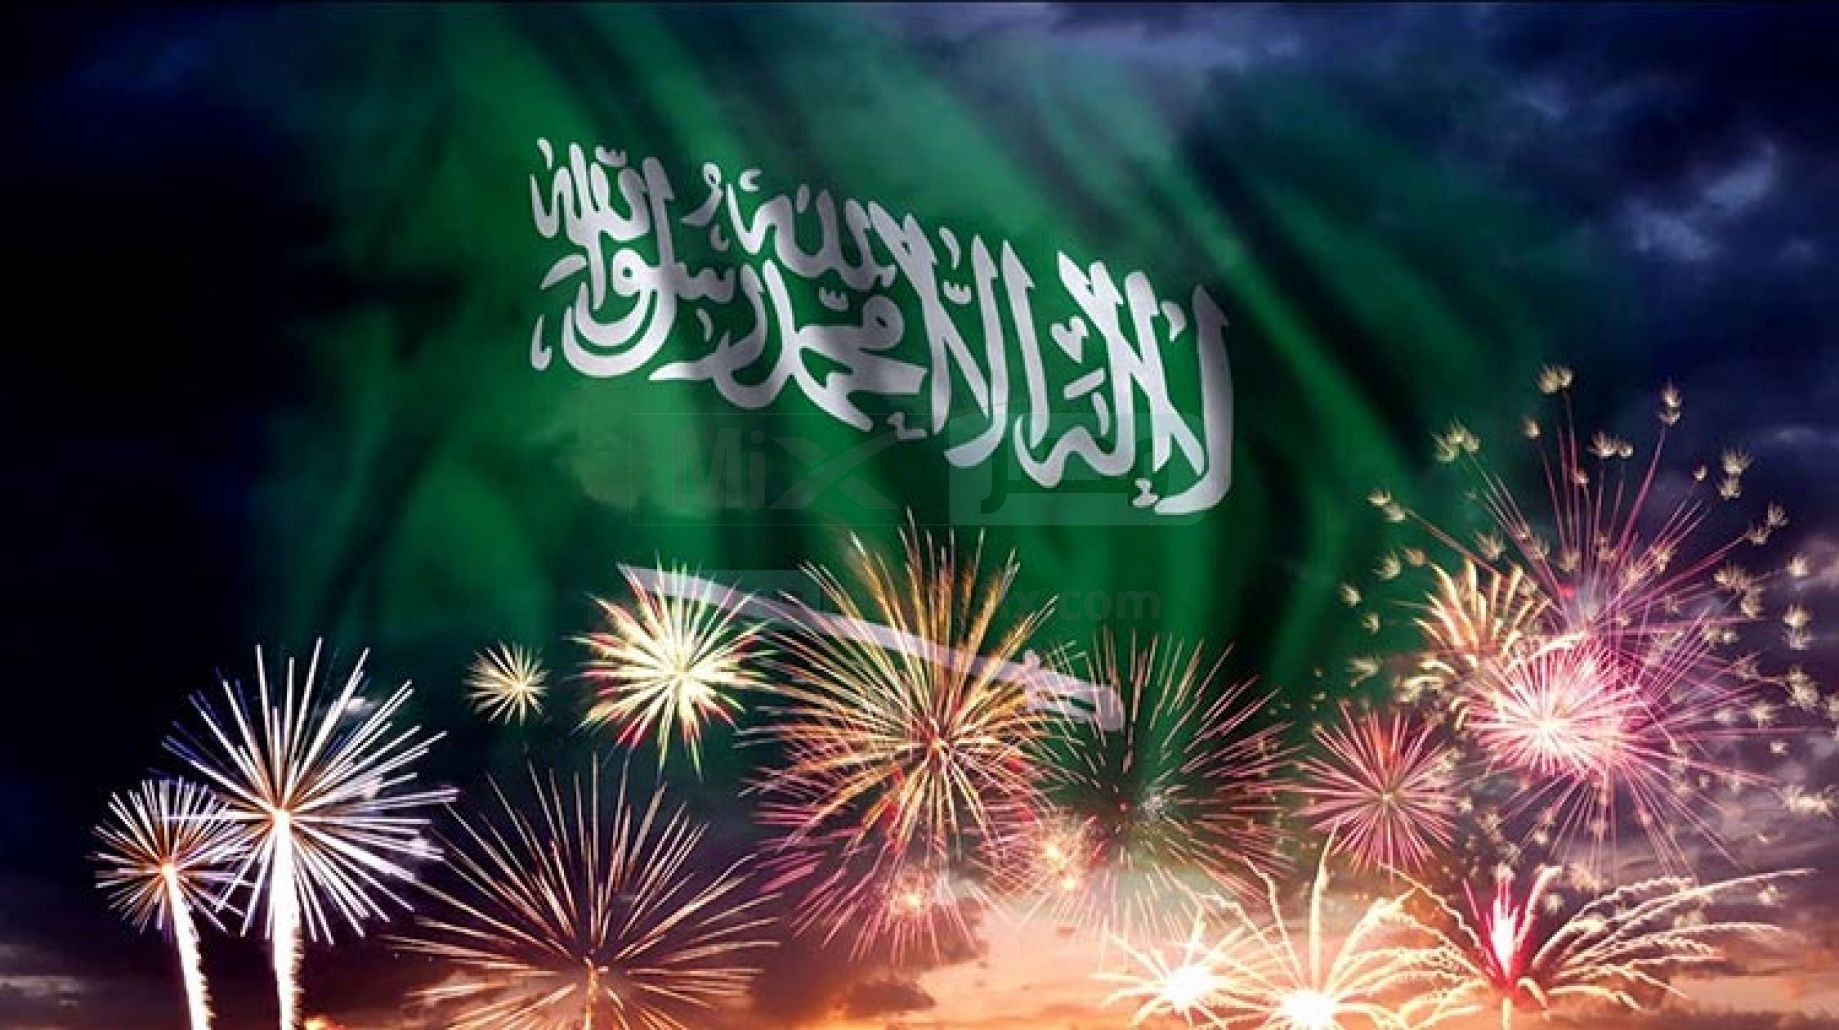 صورة خلفيات فخمه عن اليوم الوطني السعودي 92 للتصميم